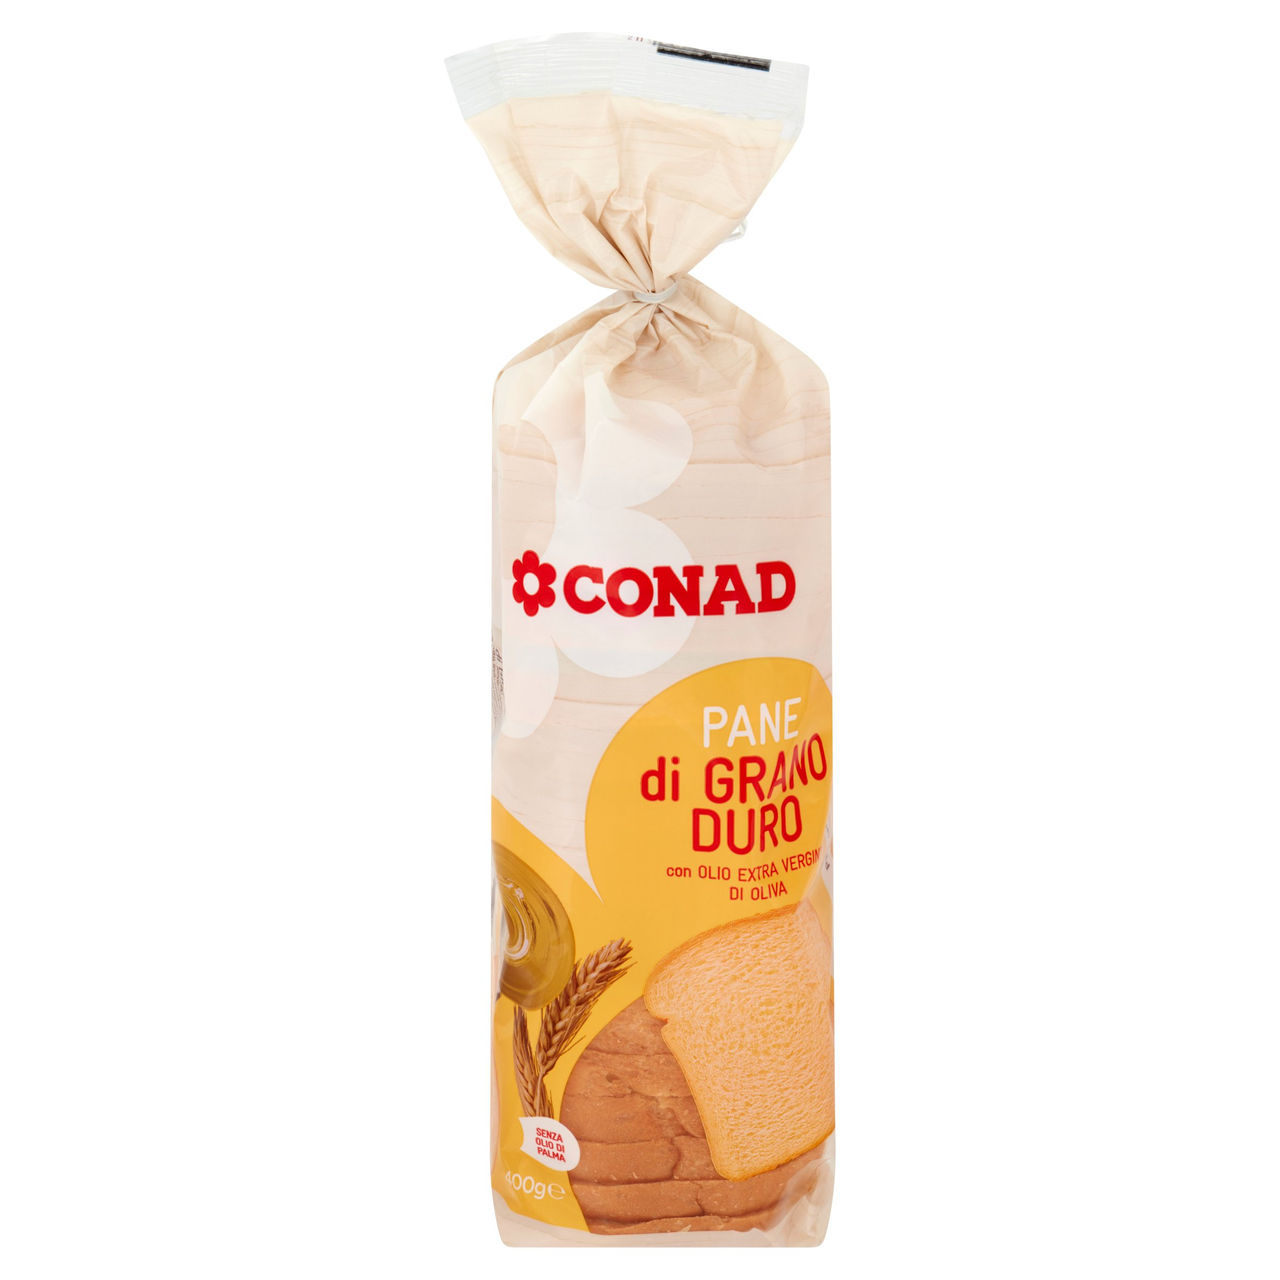 Pane di grano duro con olio EVO Conad